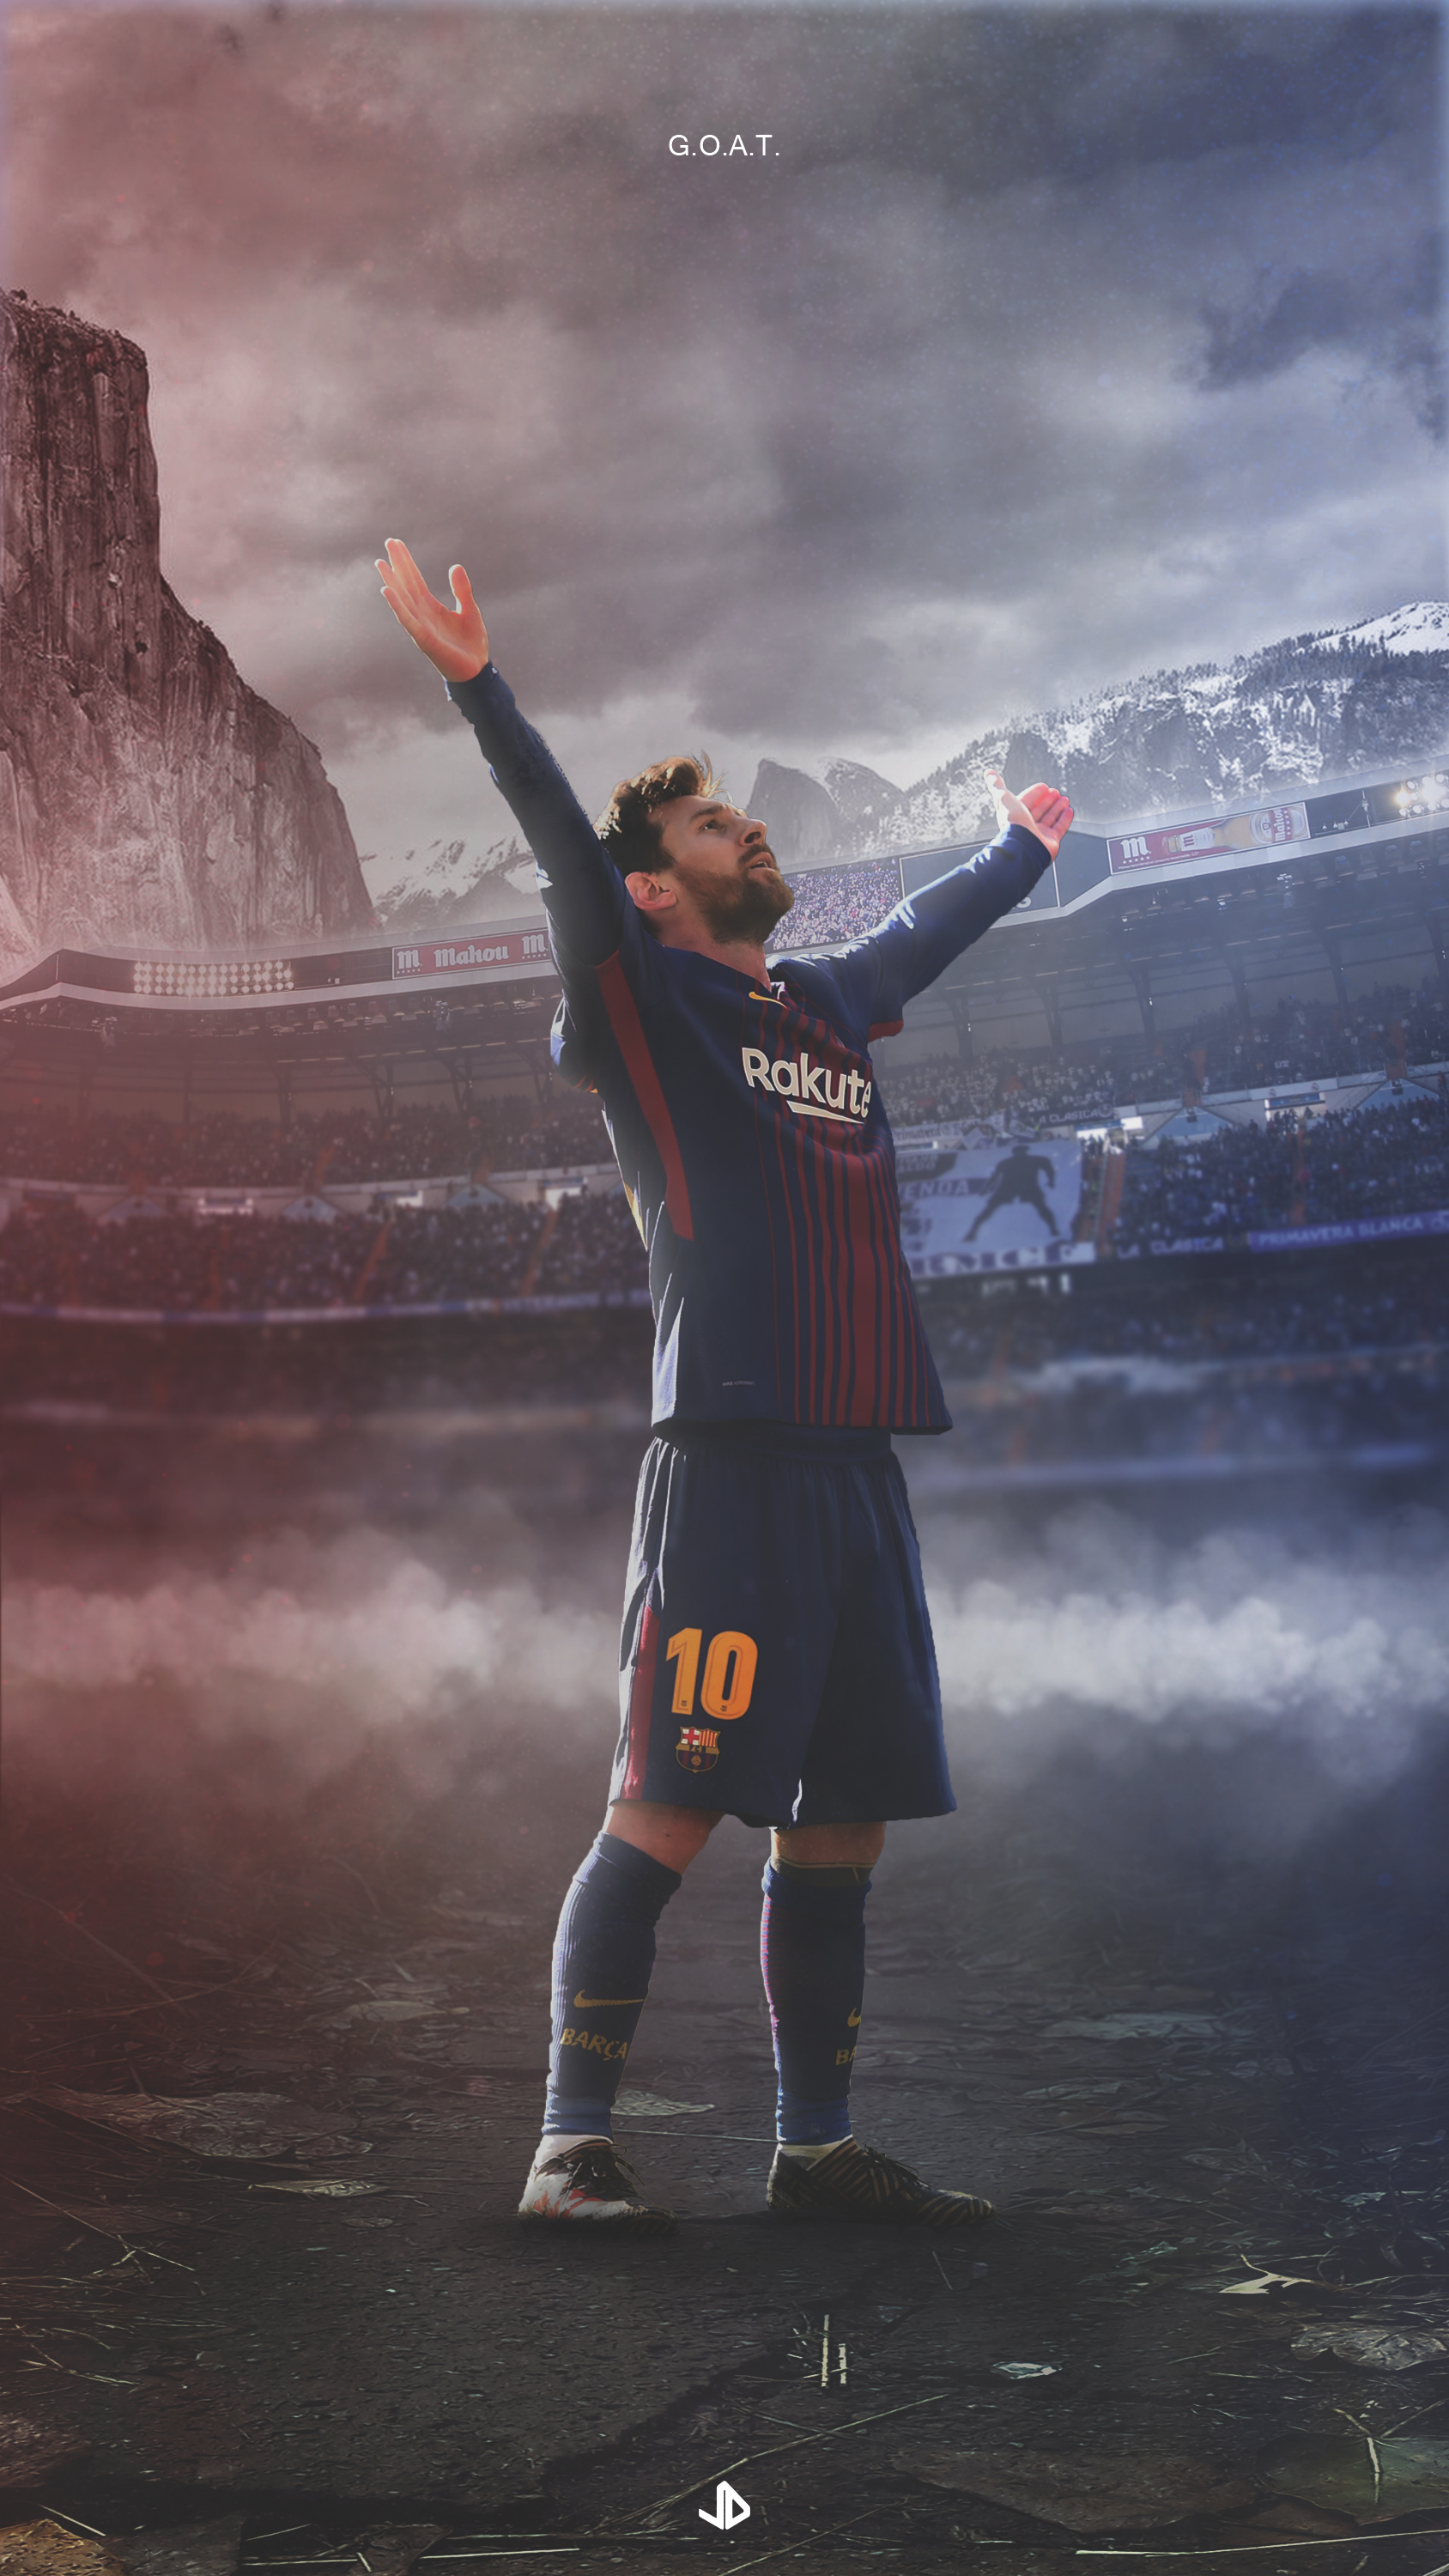 Hình nền chủ đề di động Lionel Messi với độ phân giải cao là một lựa chọn hoàn hảo cho những ai yêu thích siêu sao bóng đá này. Hãy cập nhật ngay cho chiếc điện thoại của mình nhé!